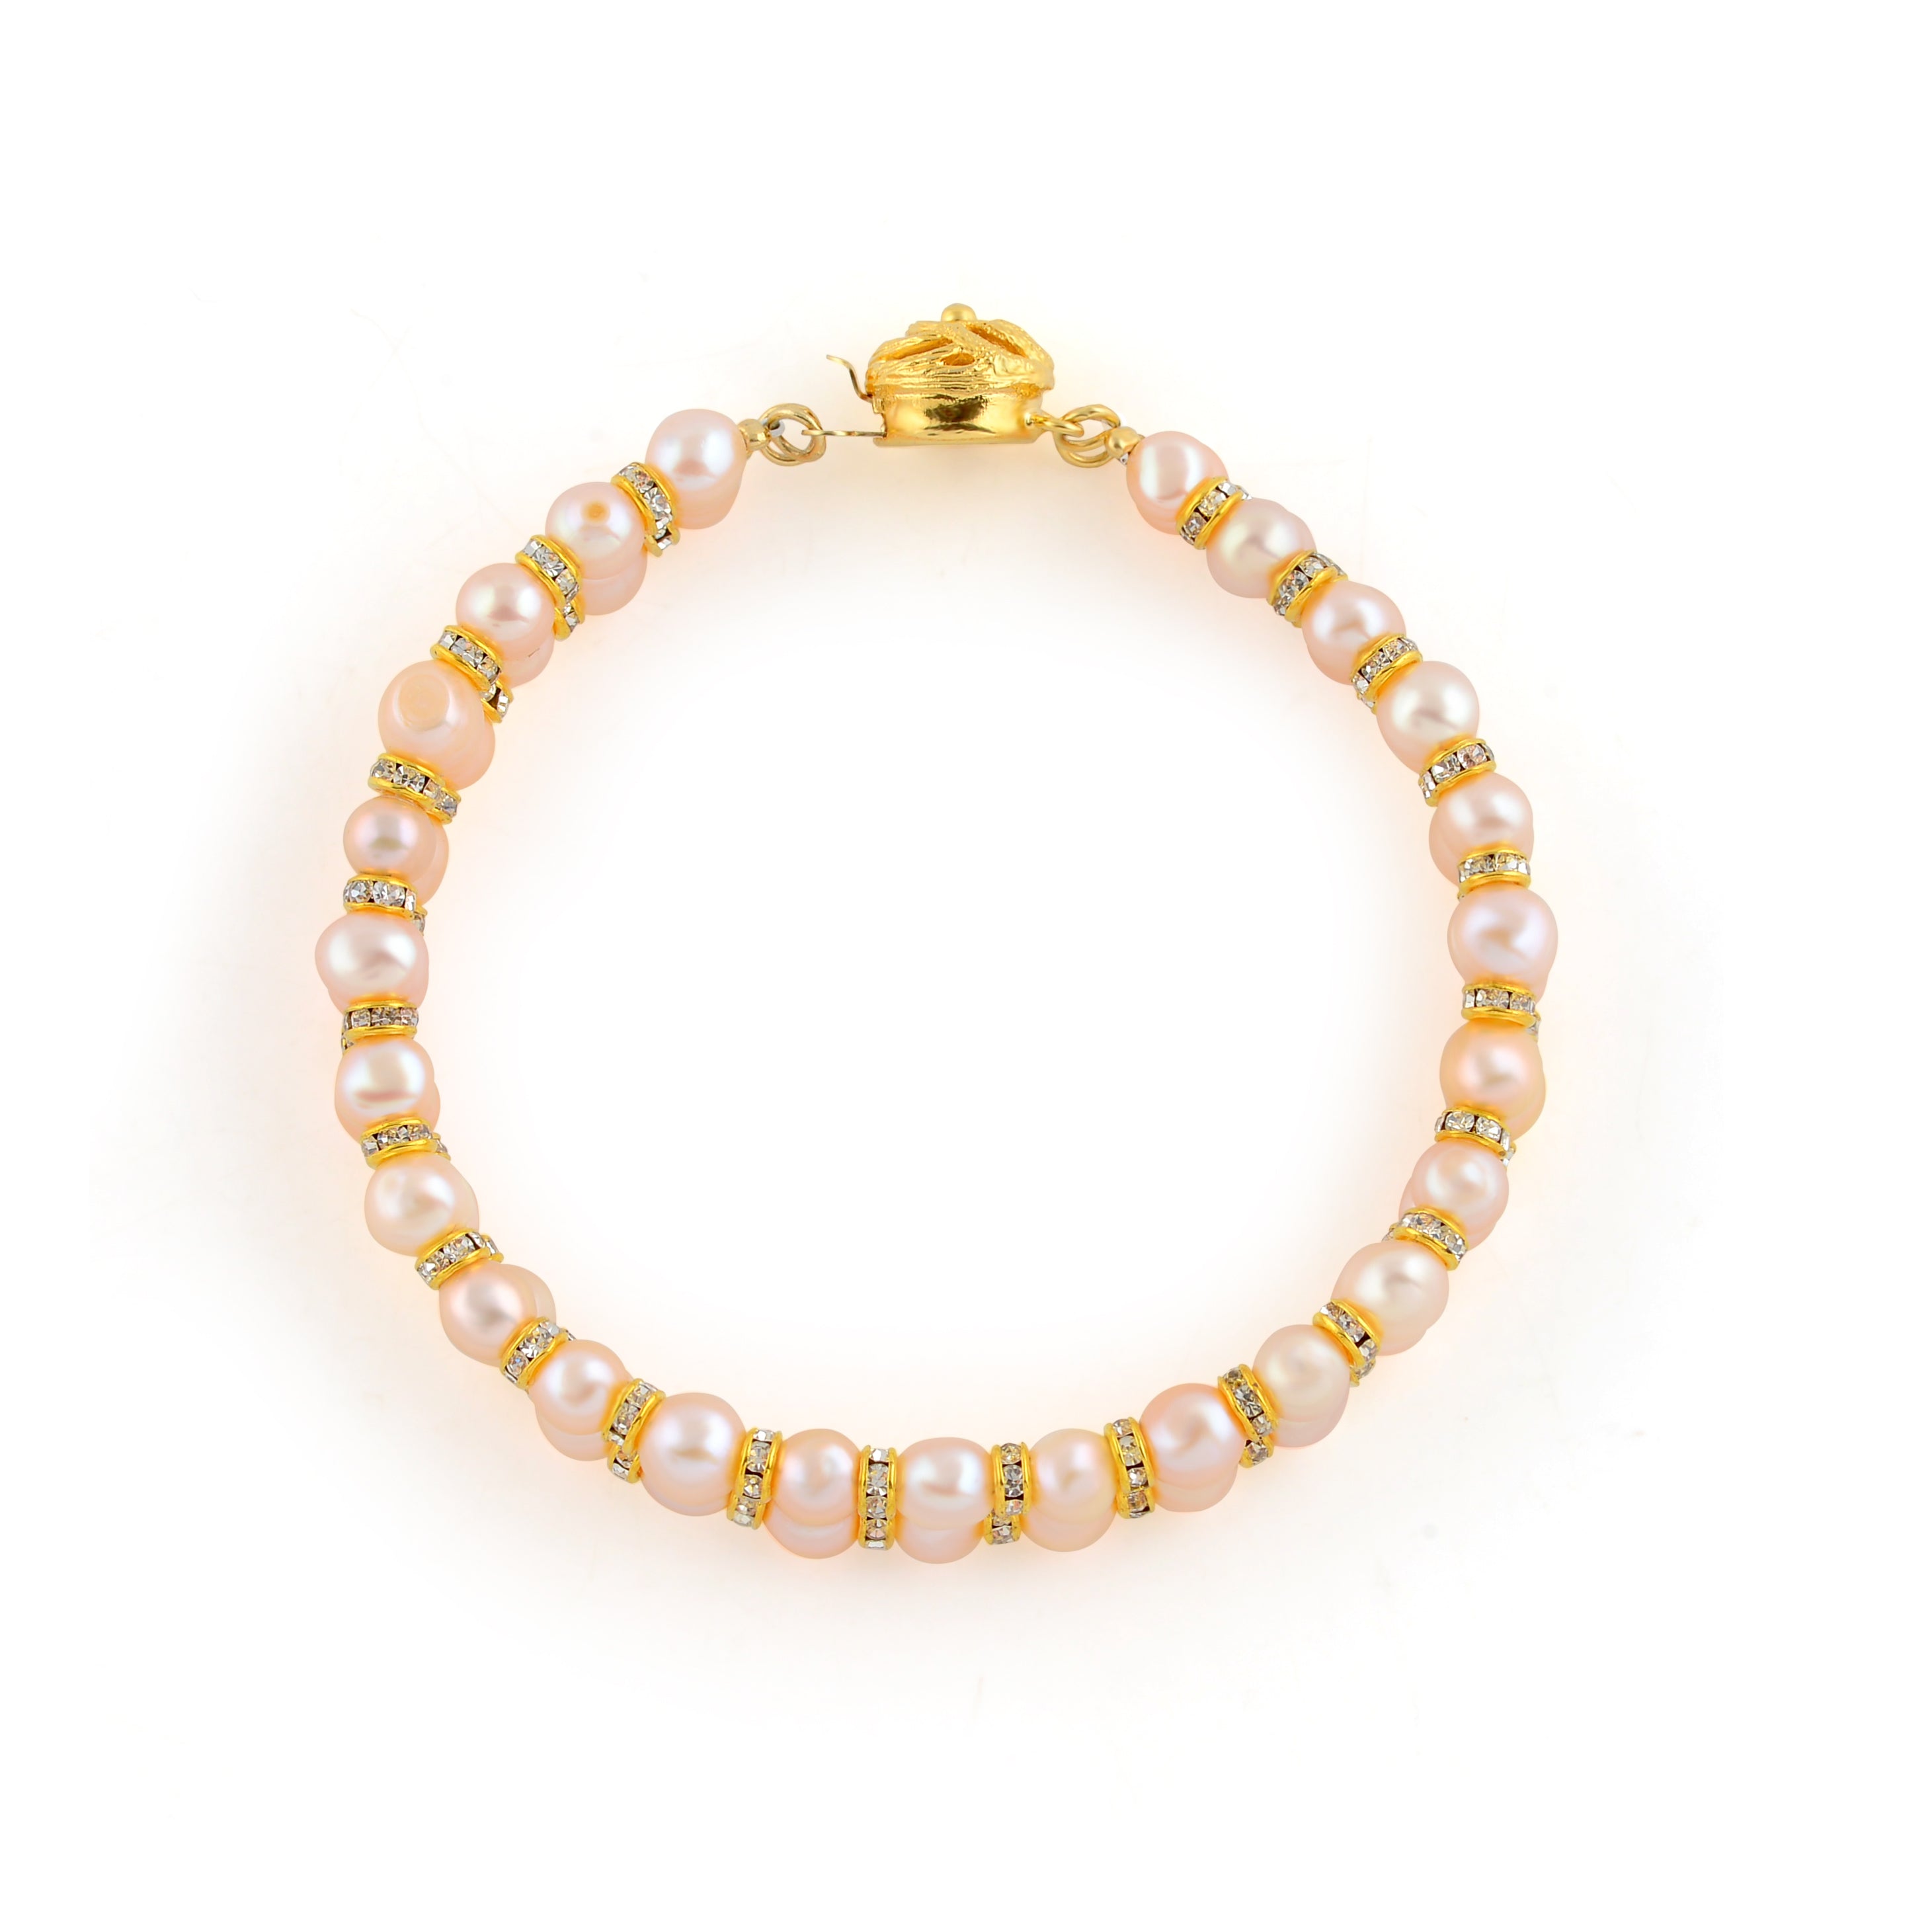 Glowing Regal Round Pearl bracelet